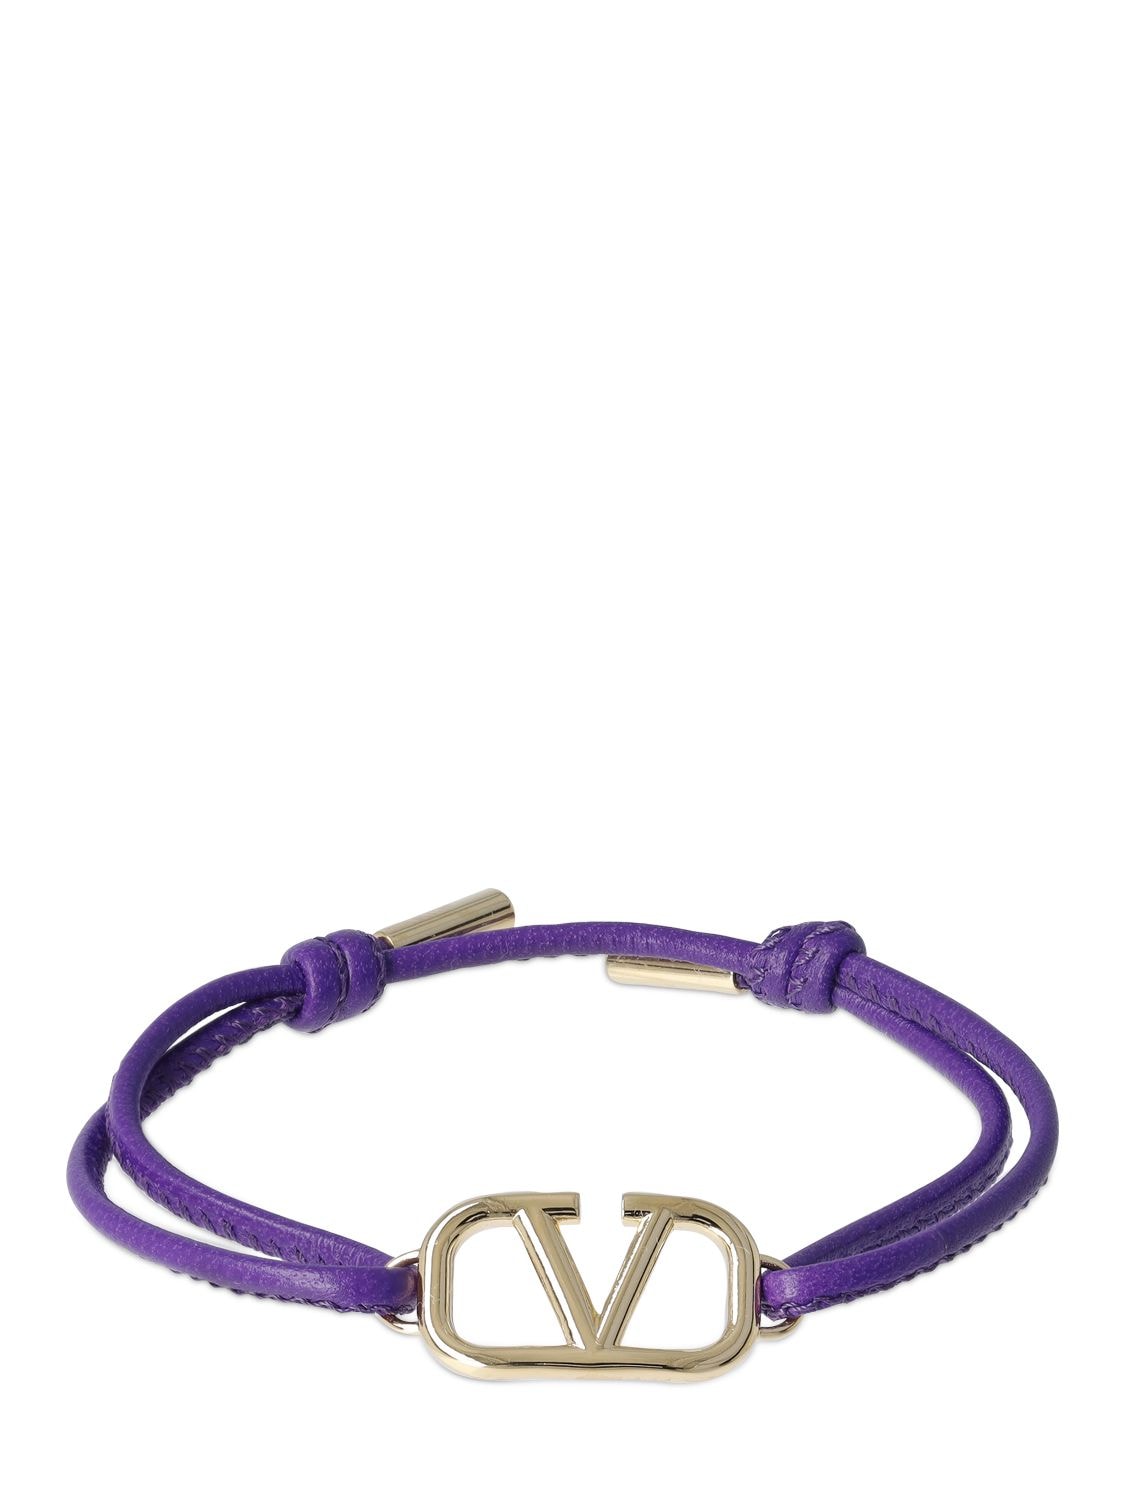 Valentino Garavani V Logo皮革滑扣手链 In Electric Violet